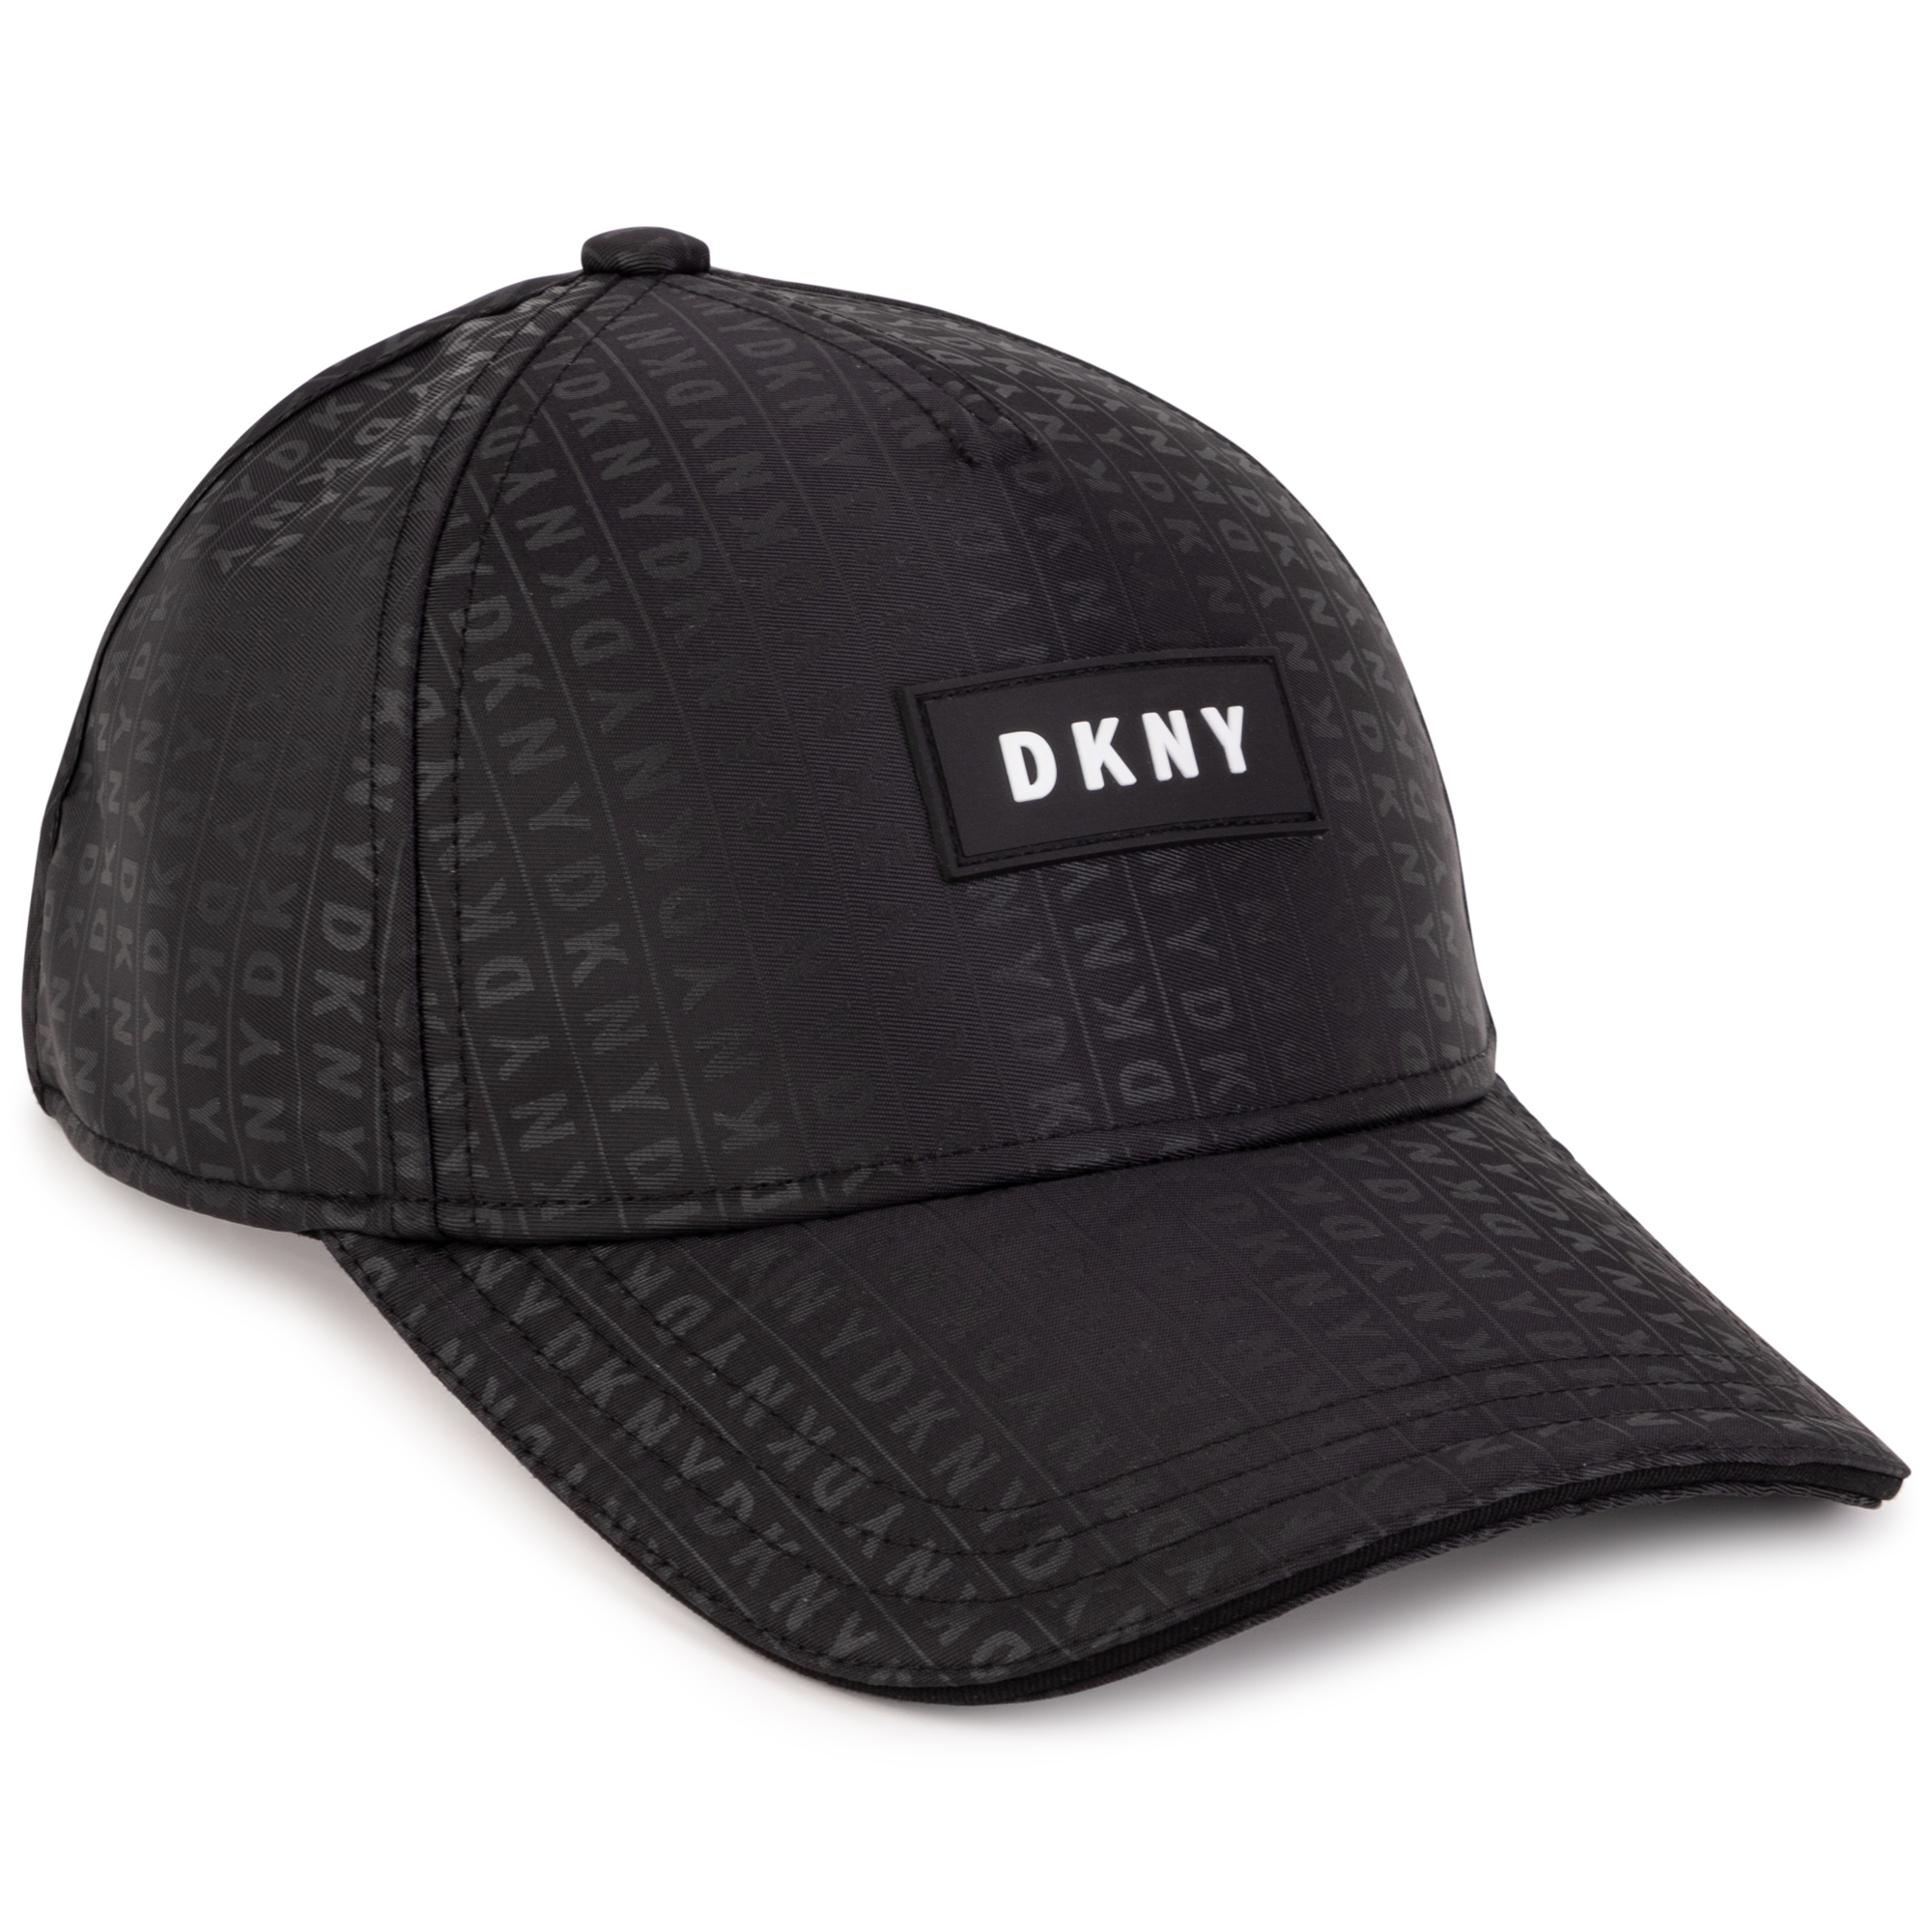 Petje met print en satijnglans DKNY Voor